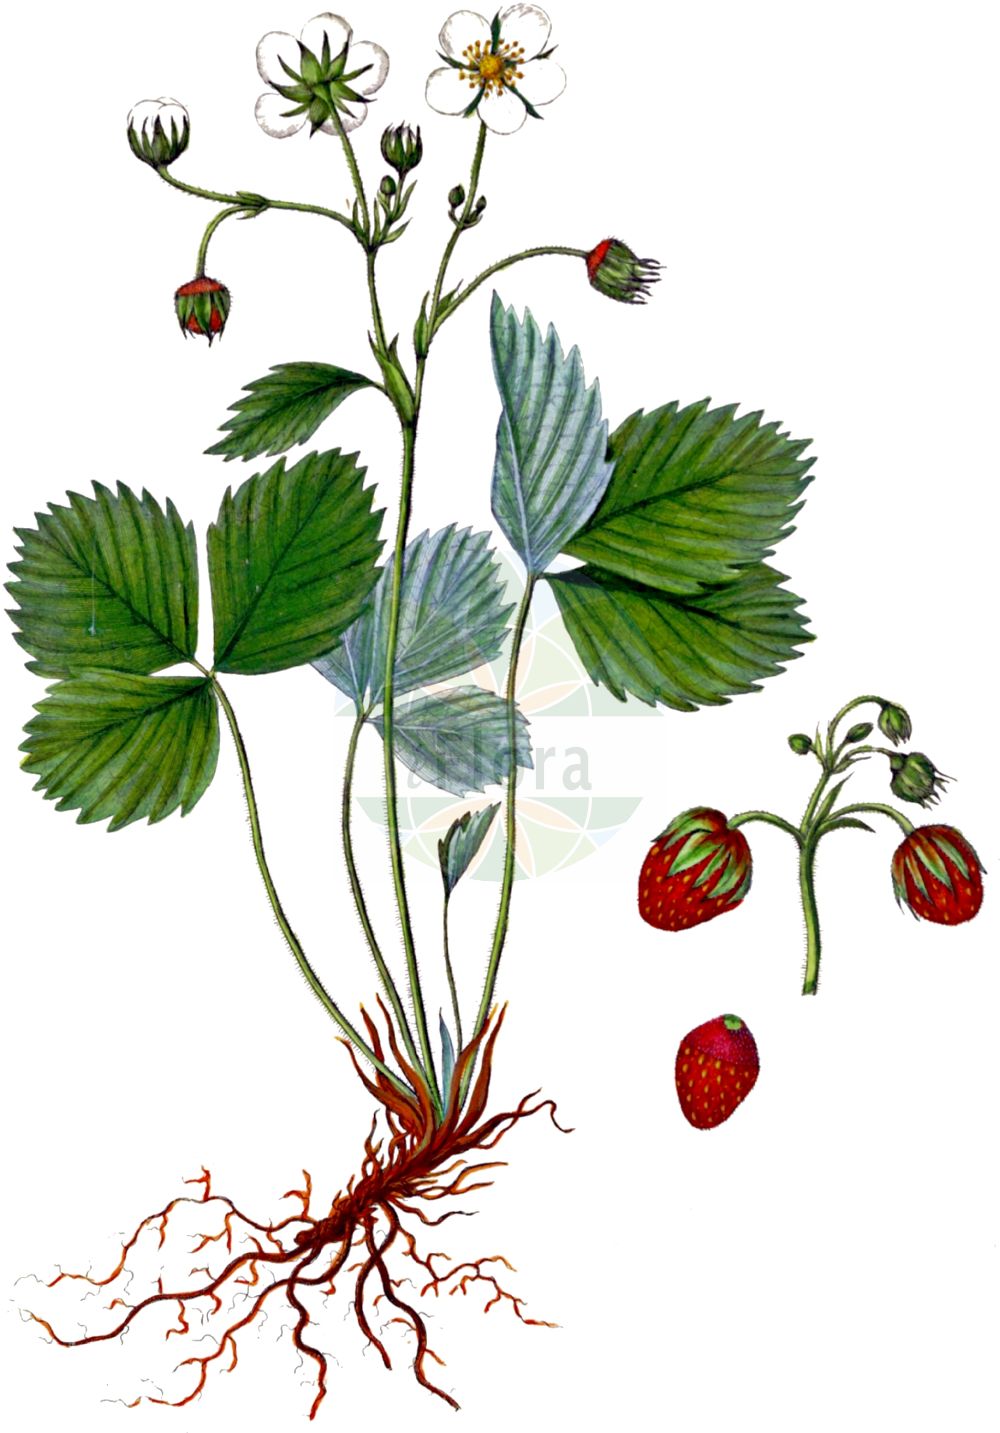 Historische Abbildung von Fragaria viridis (Hügel-Erbeere - Creamy Strawberry). Das Bild zeigt Blatt, Bluete, Frucht und Same. ---- Historical Drawing of Fragaria viridis (Hügel-Erbeere - Creamy Strawberry). The image is showing leaf, flower, fruit and seed.(Fragaria viridis,Hügel-Erbeere,Creamy Strawberry,Dactylophyllum ehrhartii,Fragaria bargea,Fragaria bifera,Fragaria breslingea,Fragaria calycina,Fragaria campana,Fragaria cerinoalba,Fragaria collina,Fragaria collivaga,Fragaria consobrina,Fragaria drymophila,Fragaria dumetorum,Fragaria heterophila,Fragaria majaufea,Fragaria nigra,Fragaria pistillaris,Fragaria rubricaulis,Fragaria silvulicola,Fragaria soyieriana,Fragaria suecica,Fragaria thomasiana,Fragaria viridis,Fragaria zapateriana,Huegel-Erbeere,Huegel-Erdbeere,Knackbeere,Creamy Strawberry,Green Strawberry,Fragaria,Erdbeere,Strawberry,Rosaceae,Rosengewächse,Rose family,Blatt,Bluete,Frucht,Same,leaf,flower,fruit,seed,Oeder (1761-1883))